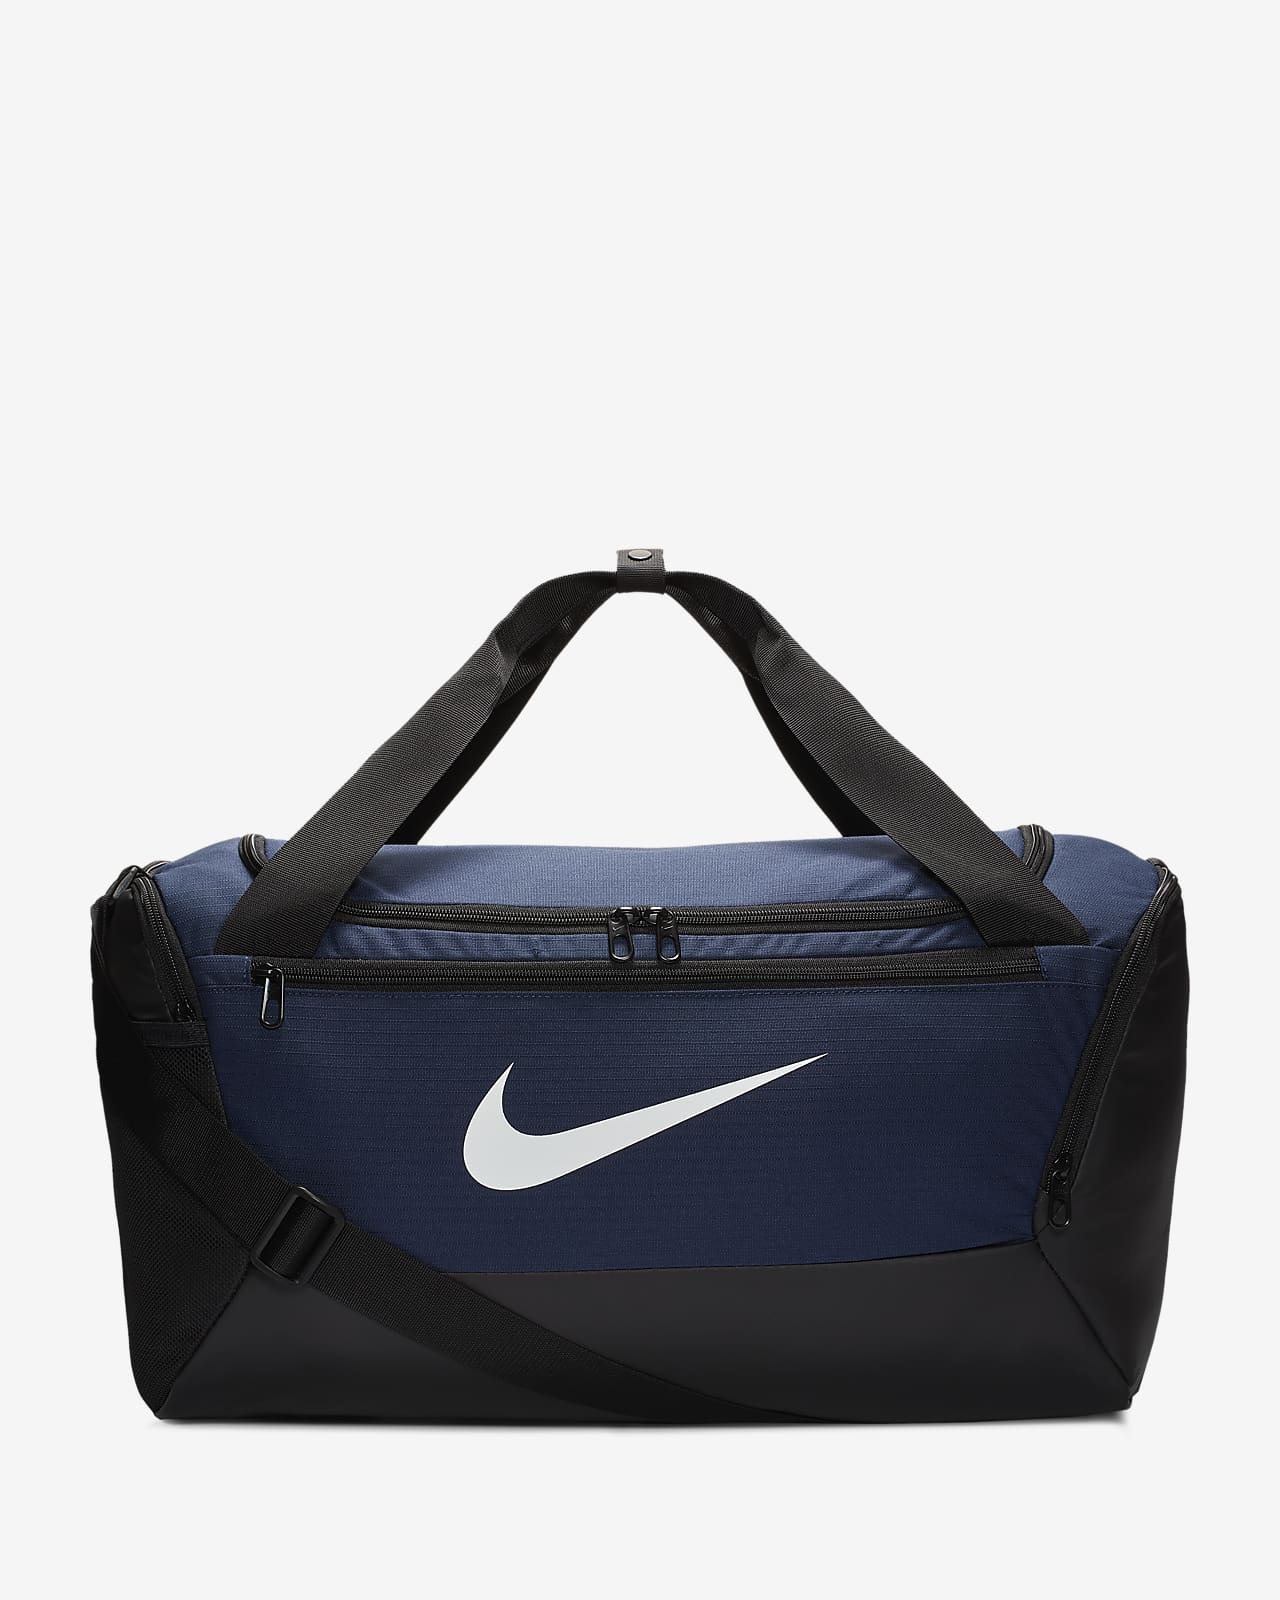 Nike gym bag